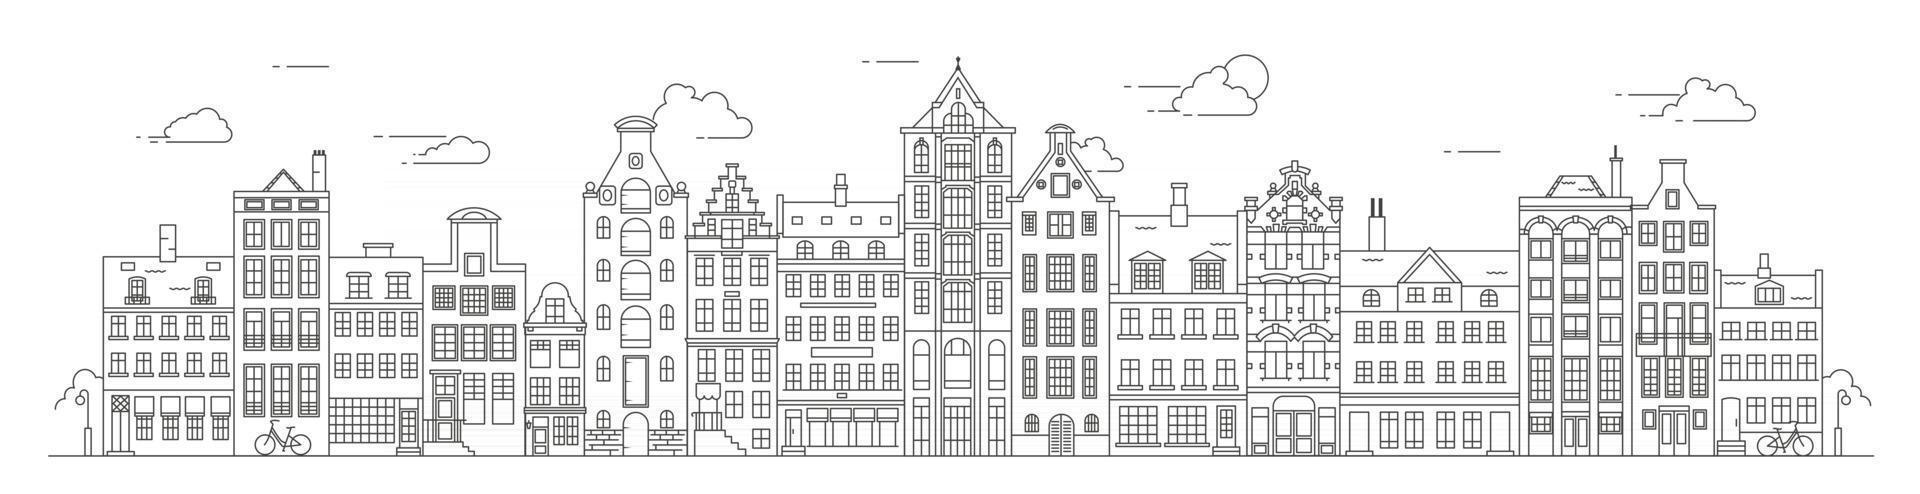 Amsterdamer Häuser im alten Stil. Typische holländische Kanalhäuser, die in den Niederlanden in der Nähe eines Kanals aufgereiht sind. Gebäude und Fassaden für Banner oder Poster. Vektor-Umriss-Abbildung. vektor